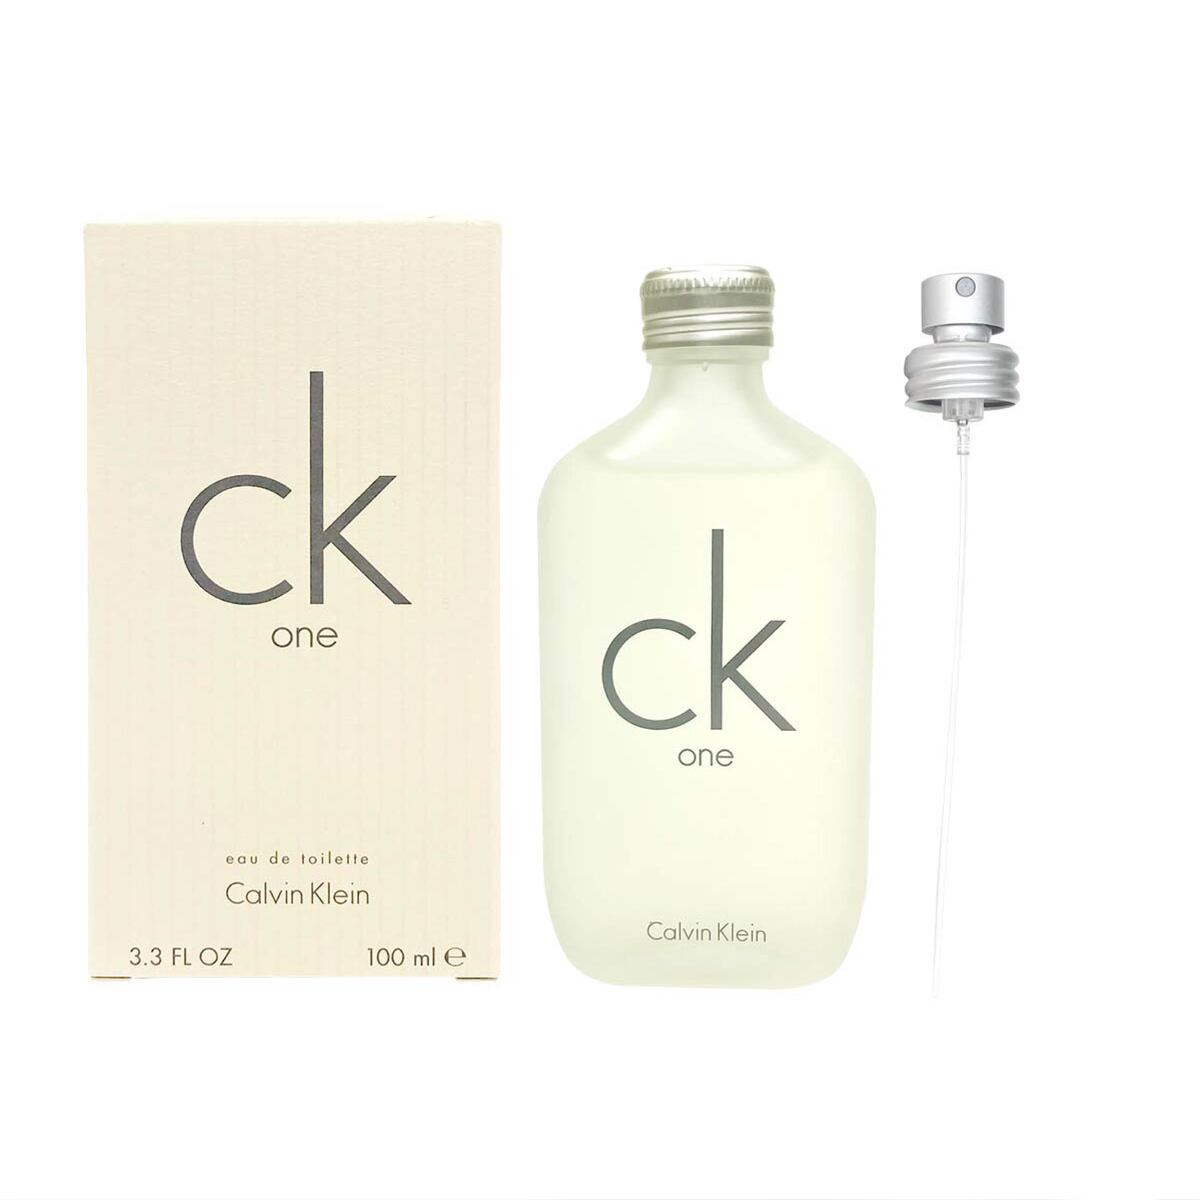 カルバンクライン 香水 CK ONE シーケーワン 正規品 EDT SP 100ml CK one オードトワレ プレゼント 刻印 Calvin  Klein CK 名入れ :cos-323:バッグ 財布のプルミエール 通販 